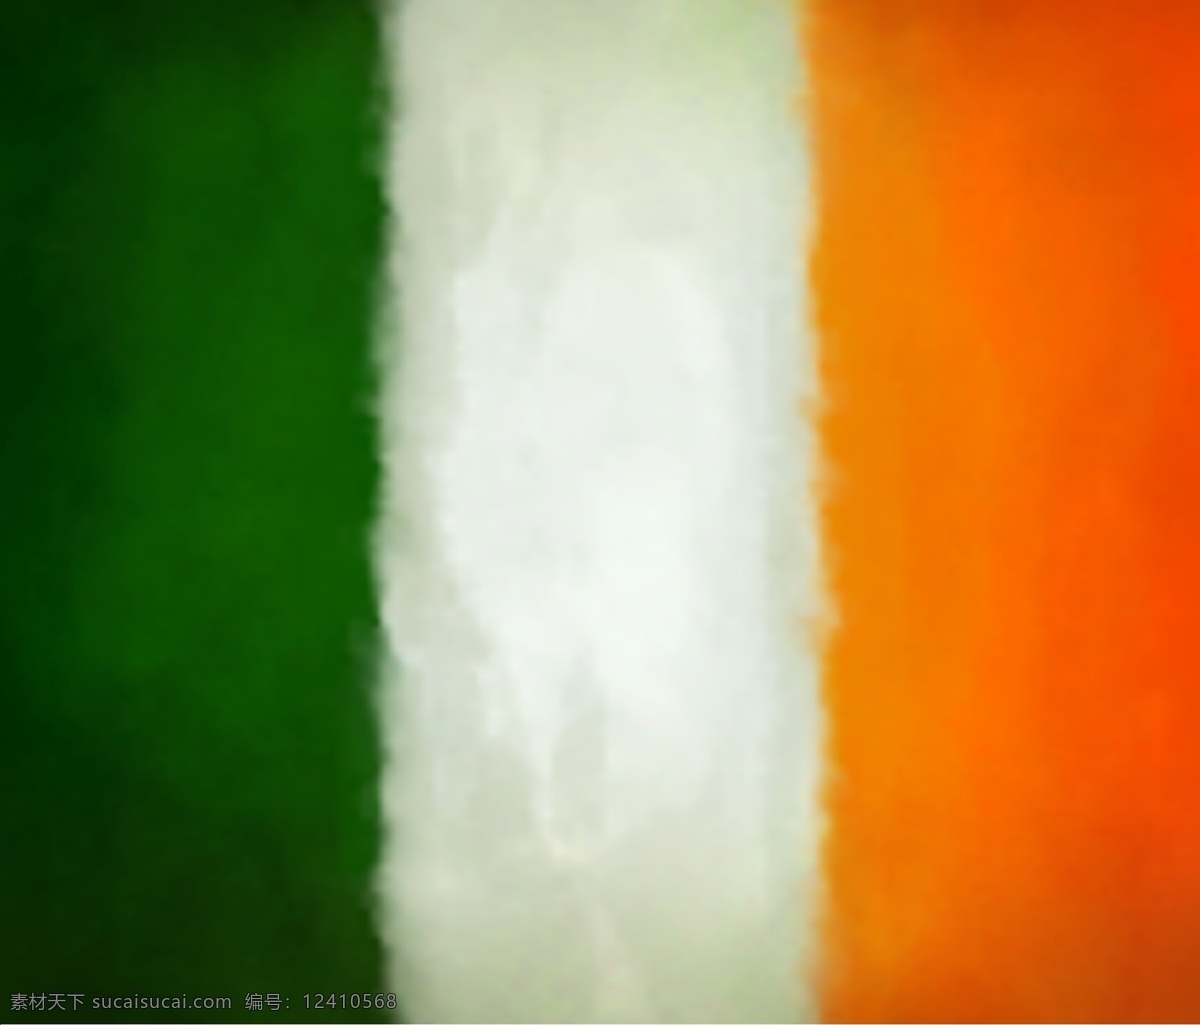 爱尔兰 背景设计 背景素材 背景图案 抽象背景 抽象设计 卡通背景 卡通设计 国旗 矢量 模板下载 爱尔兰国旗 圣帕特里克节 宣传设计 时尚背景 绚丽背景 矢量背景 矢量设计 艺术设计 psd源文件